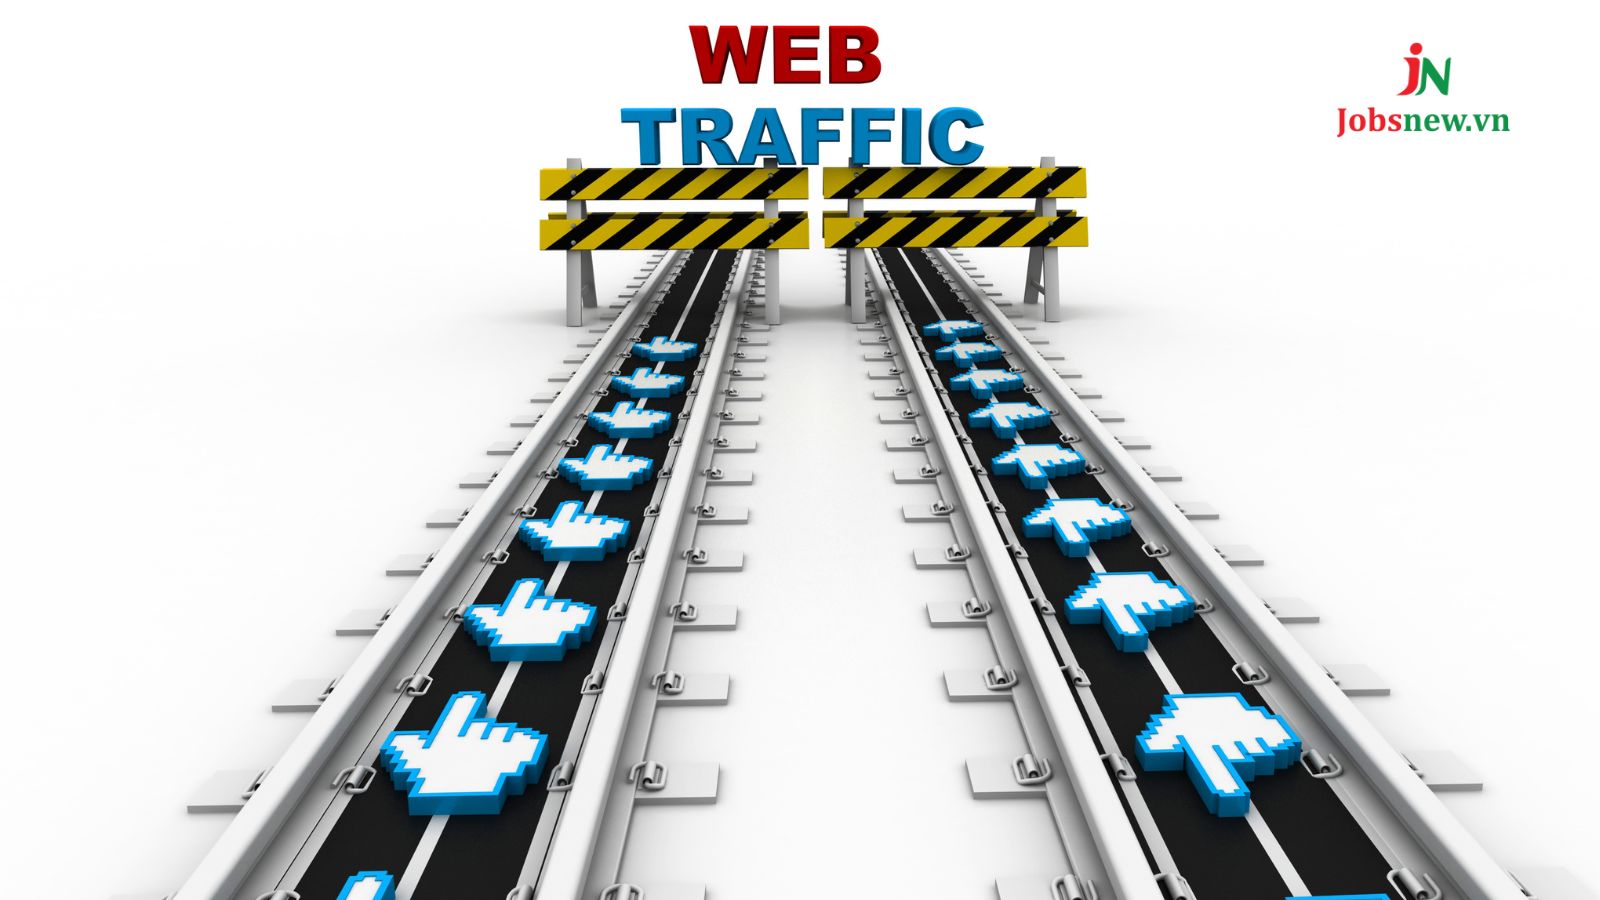 tăng traffic website